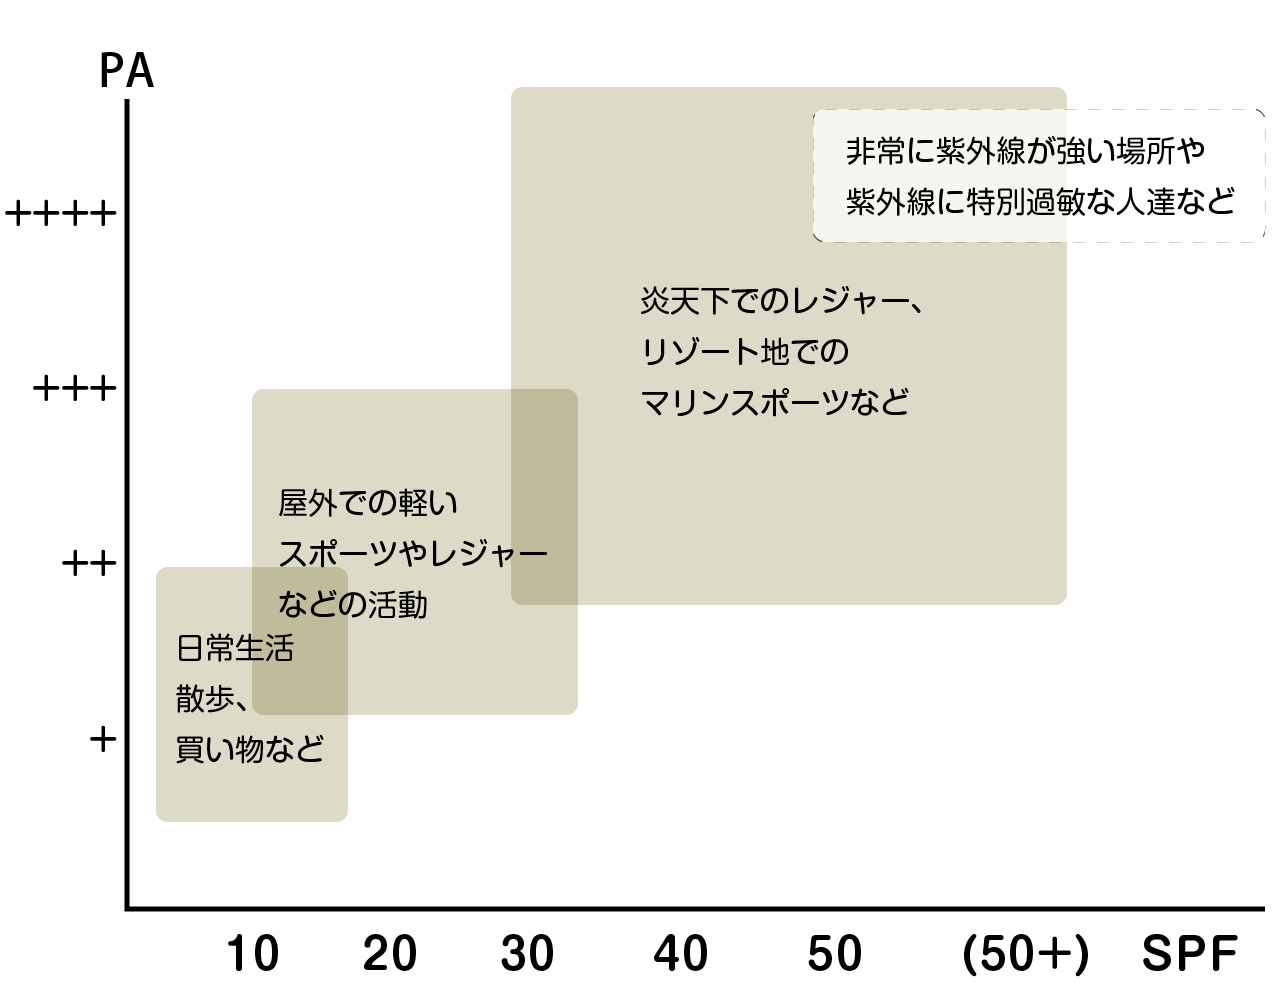 日本化粧品工業連合会編　「紫外線防止用化粧品と紫外線防止効果」の図